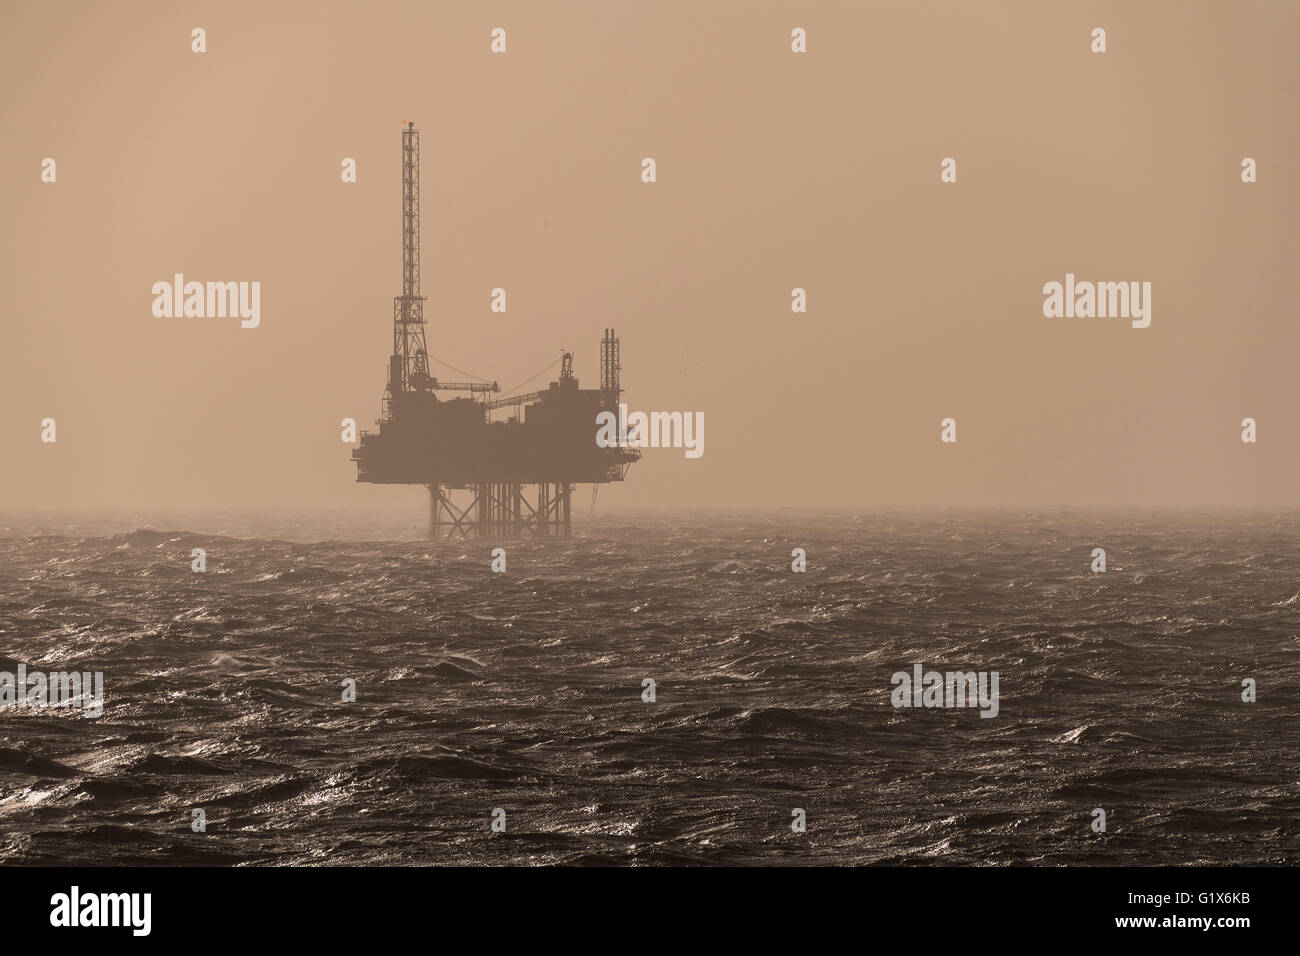 Oil rig, oil exploration, North Sea Stock Photo